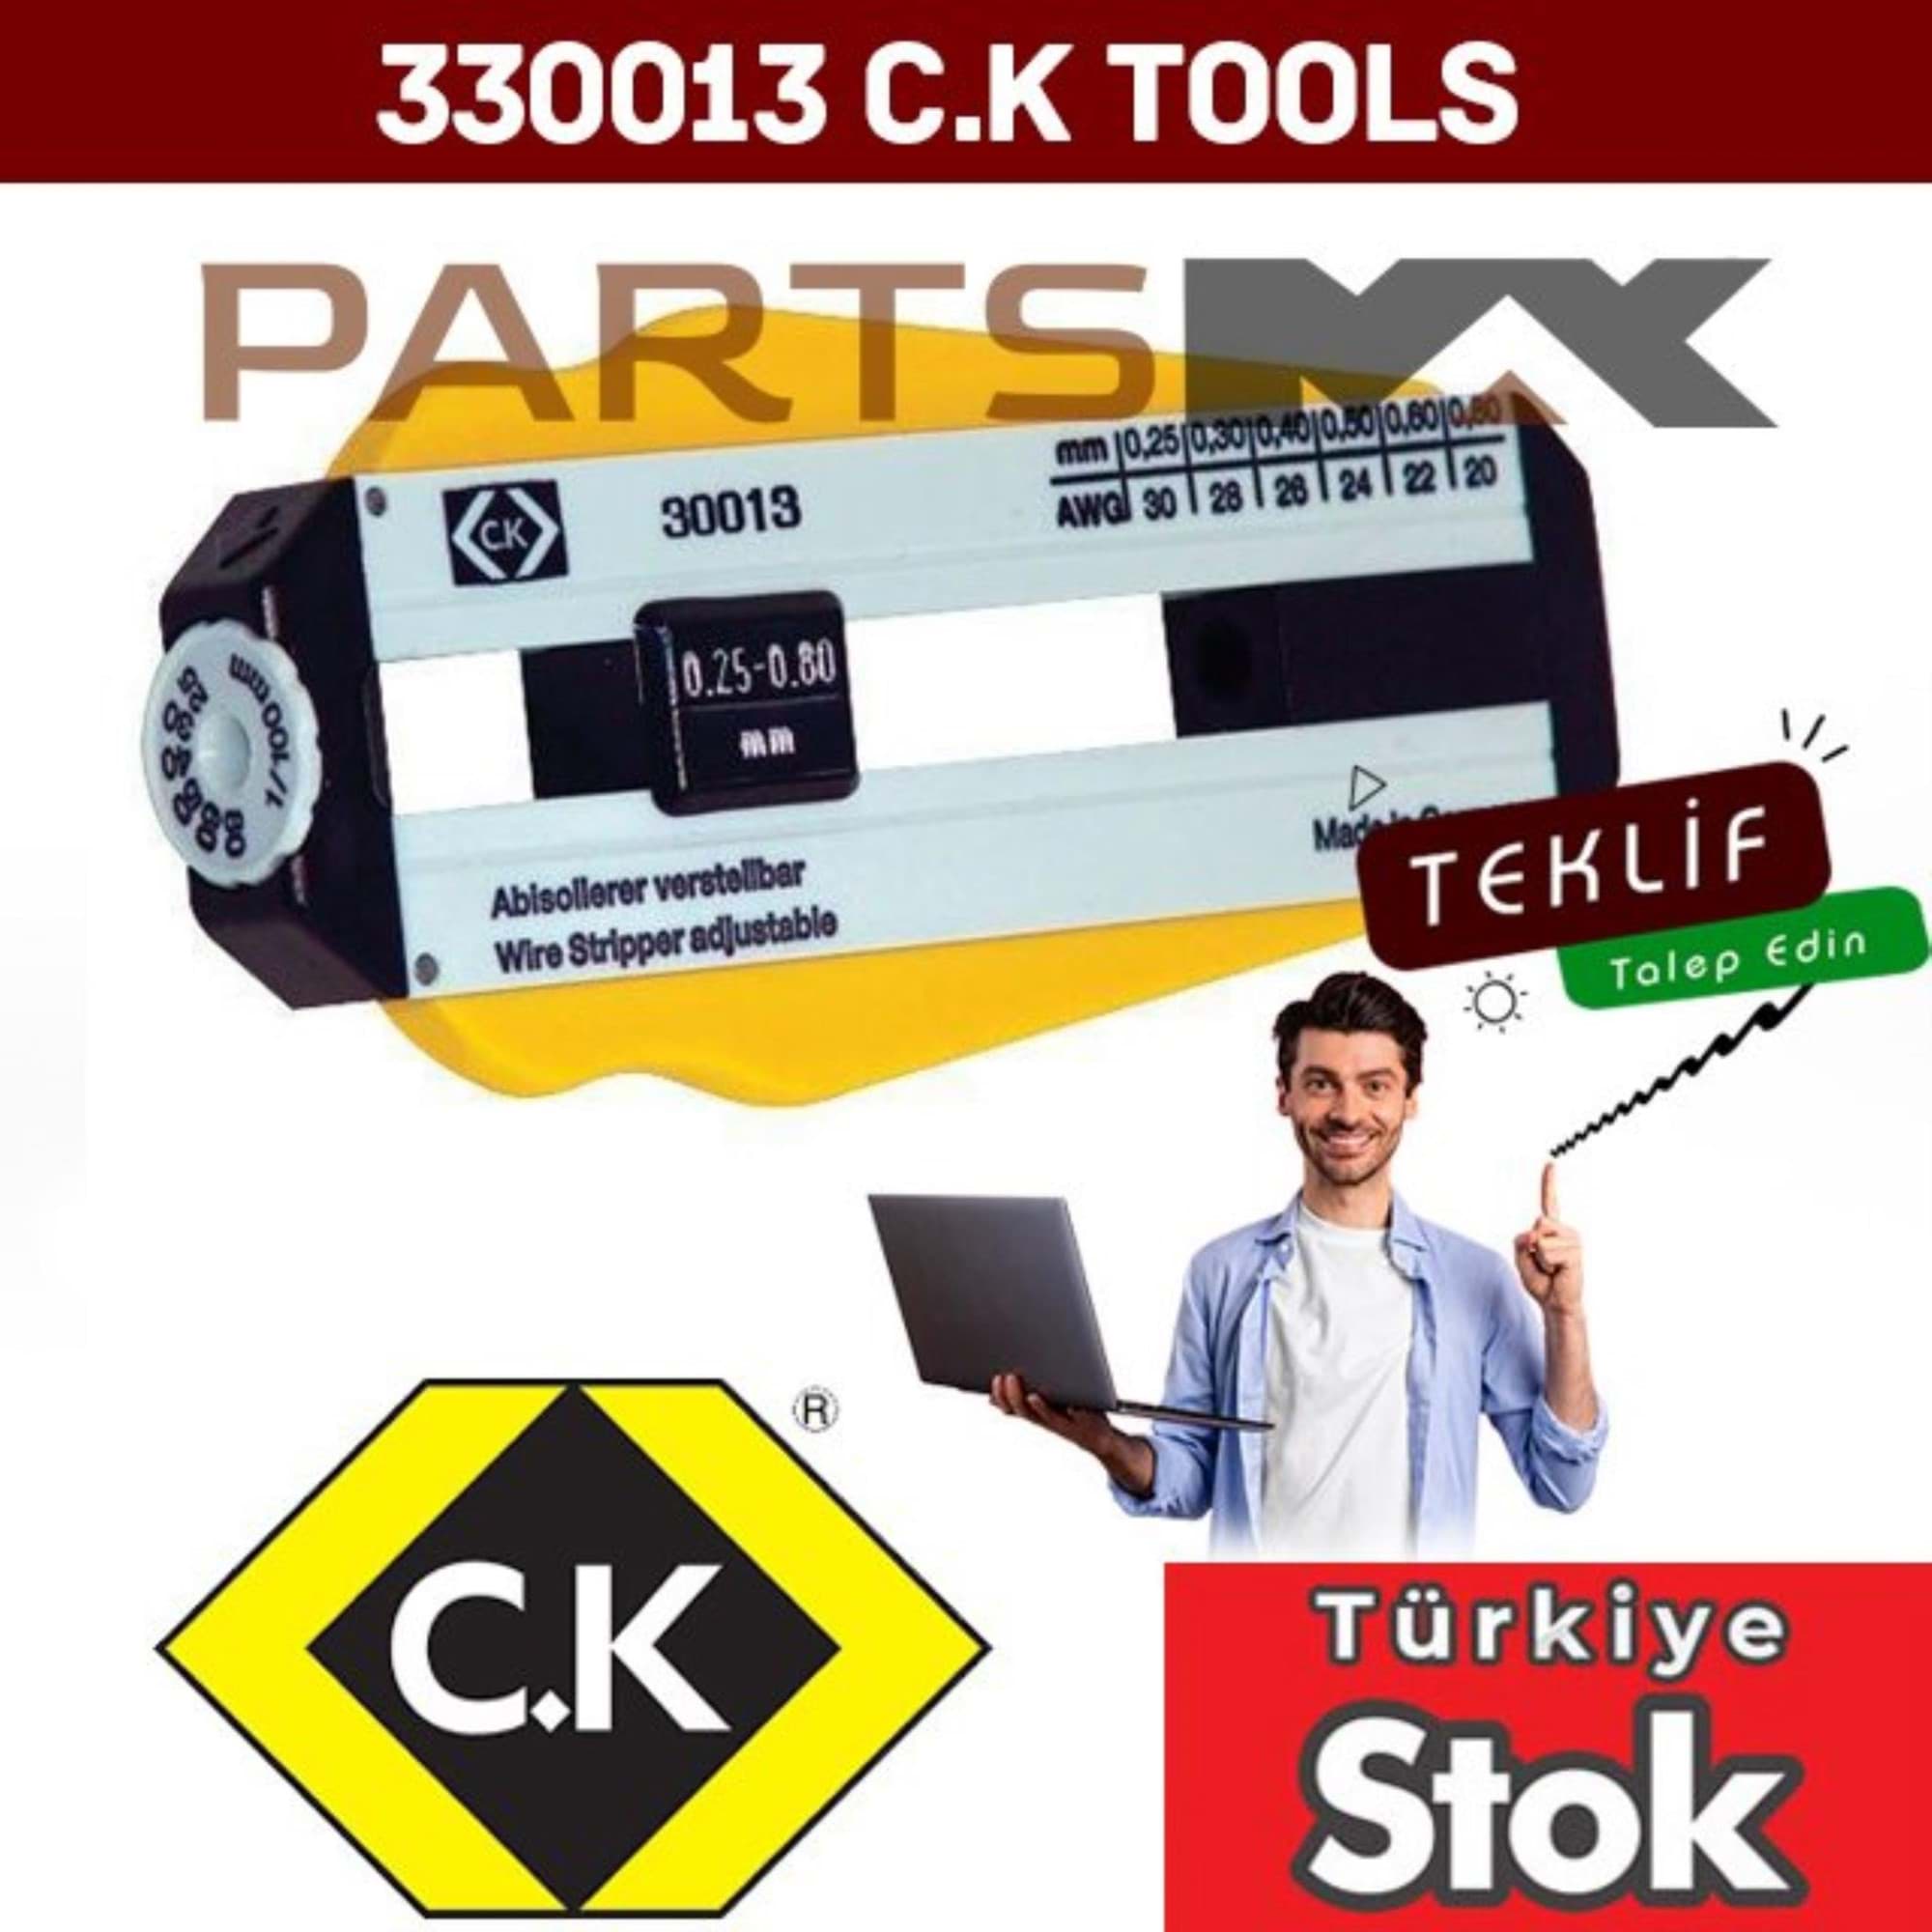 Picture of 330013 CK tools | Partsmax Türkiye